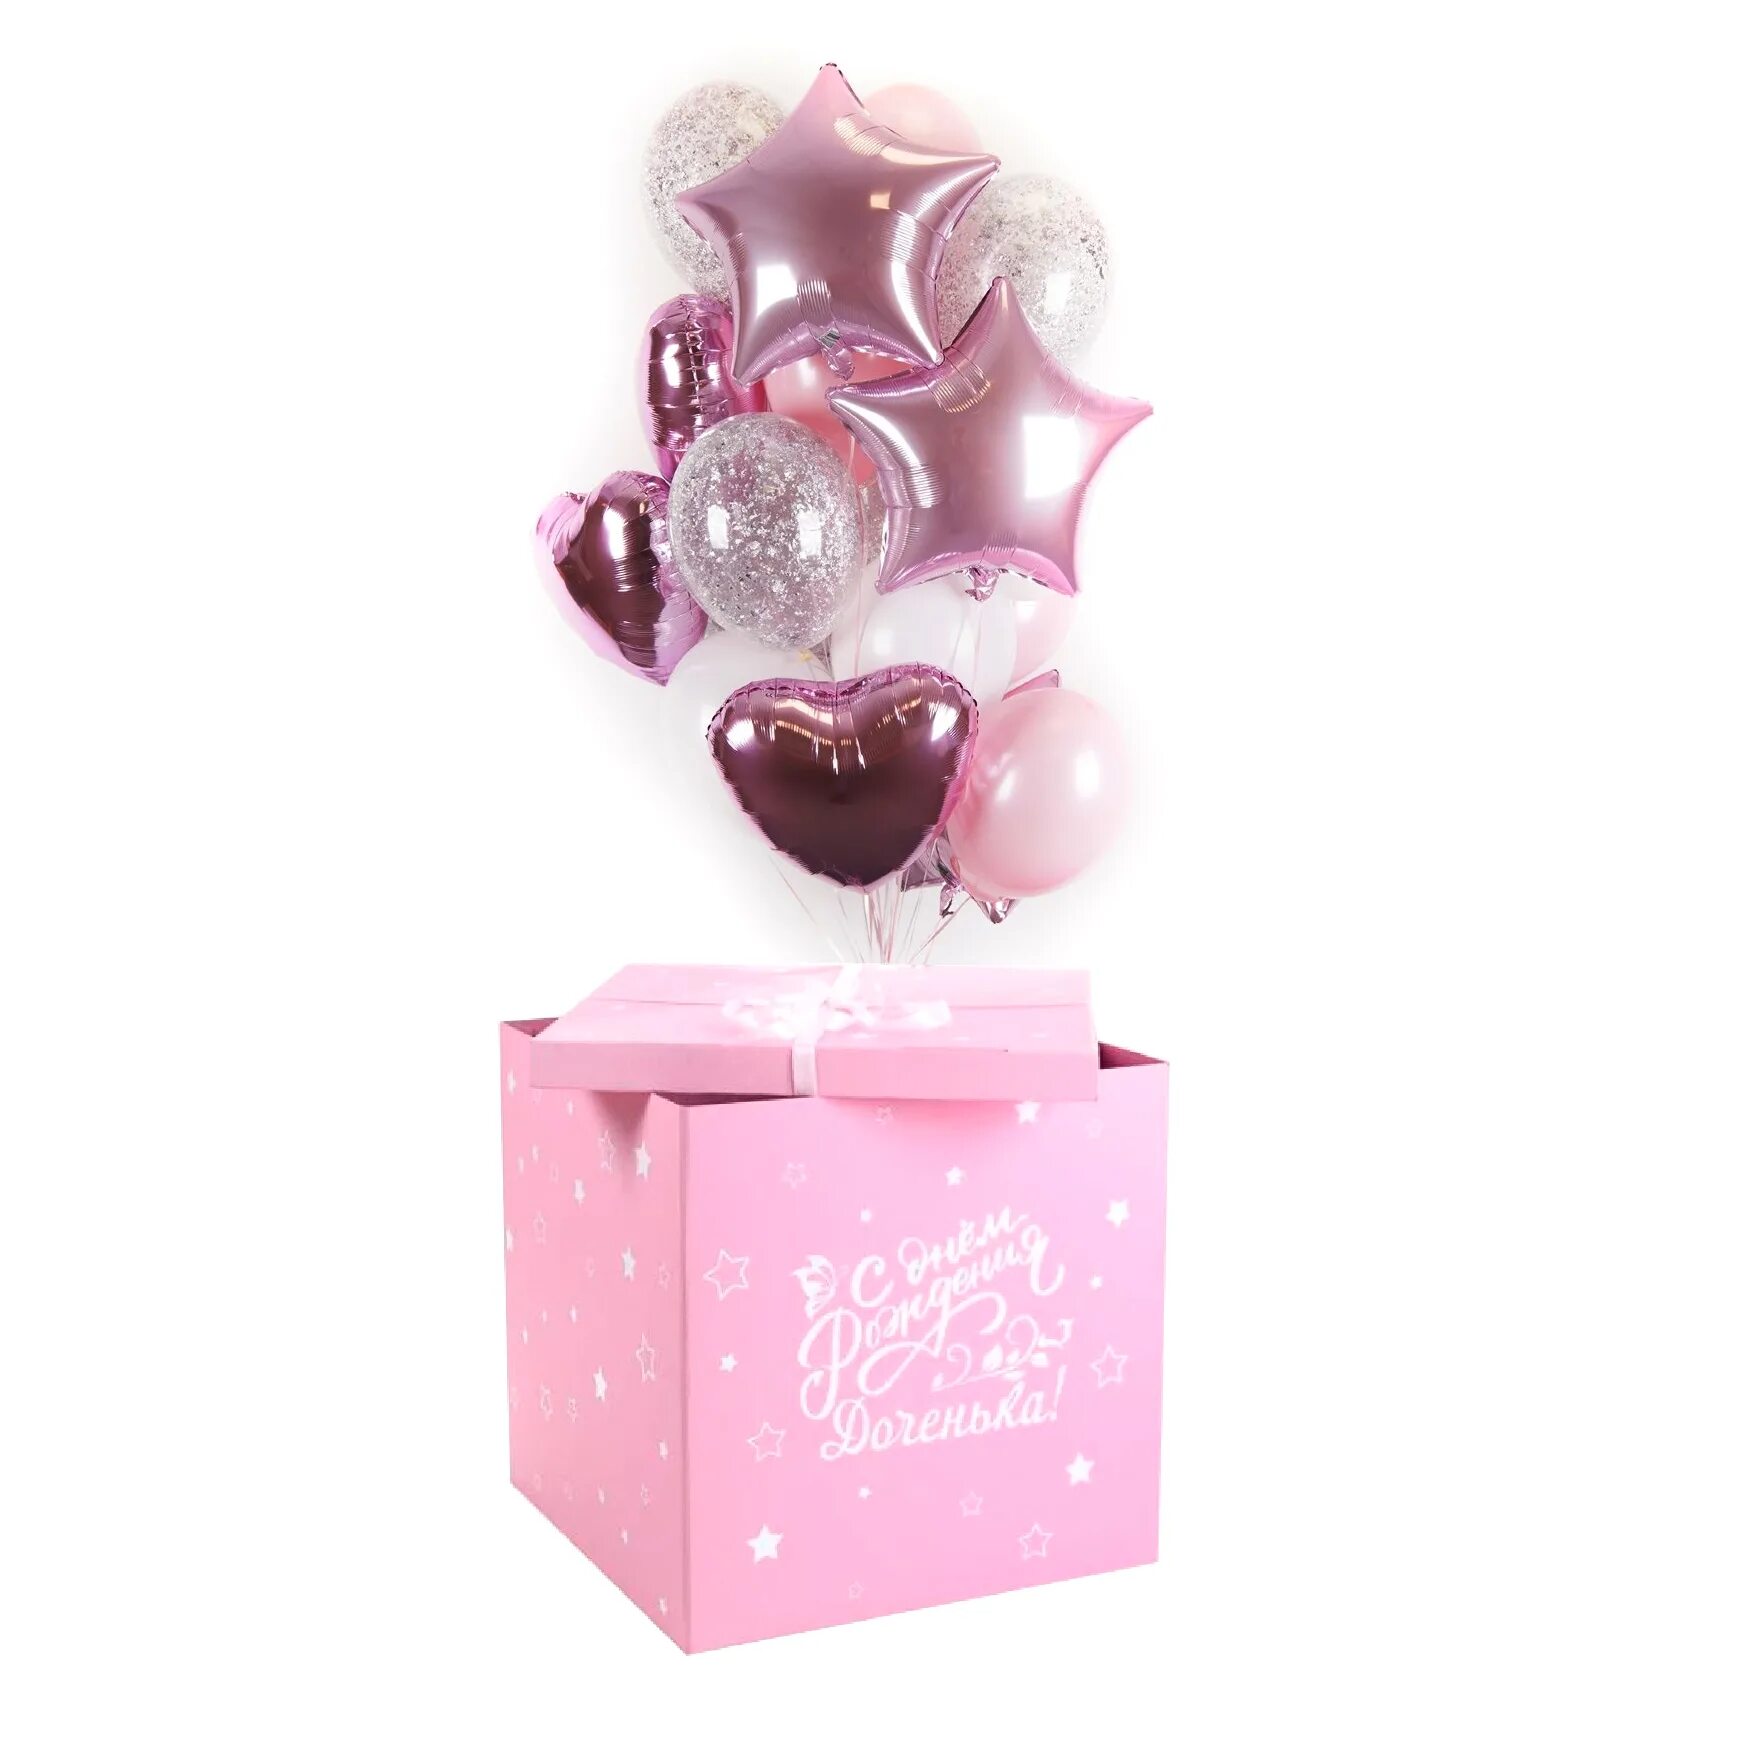 Розовый сюрприз. Коробка с шарами. Коробка с шарами для девочки. Коробка сюрприз с шарами для девочки. Розовая коробка сюрприз с шарами.